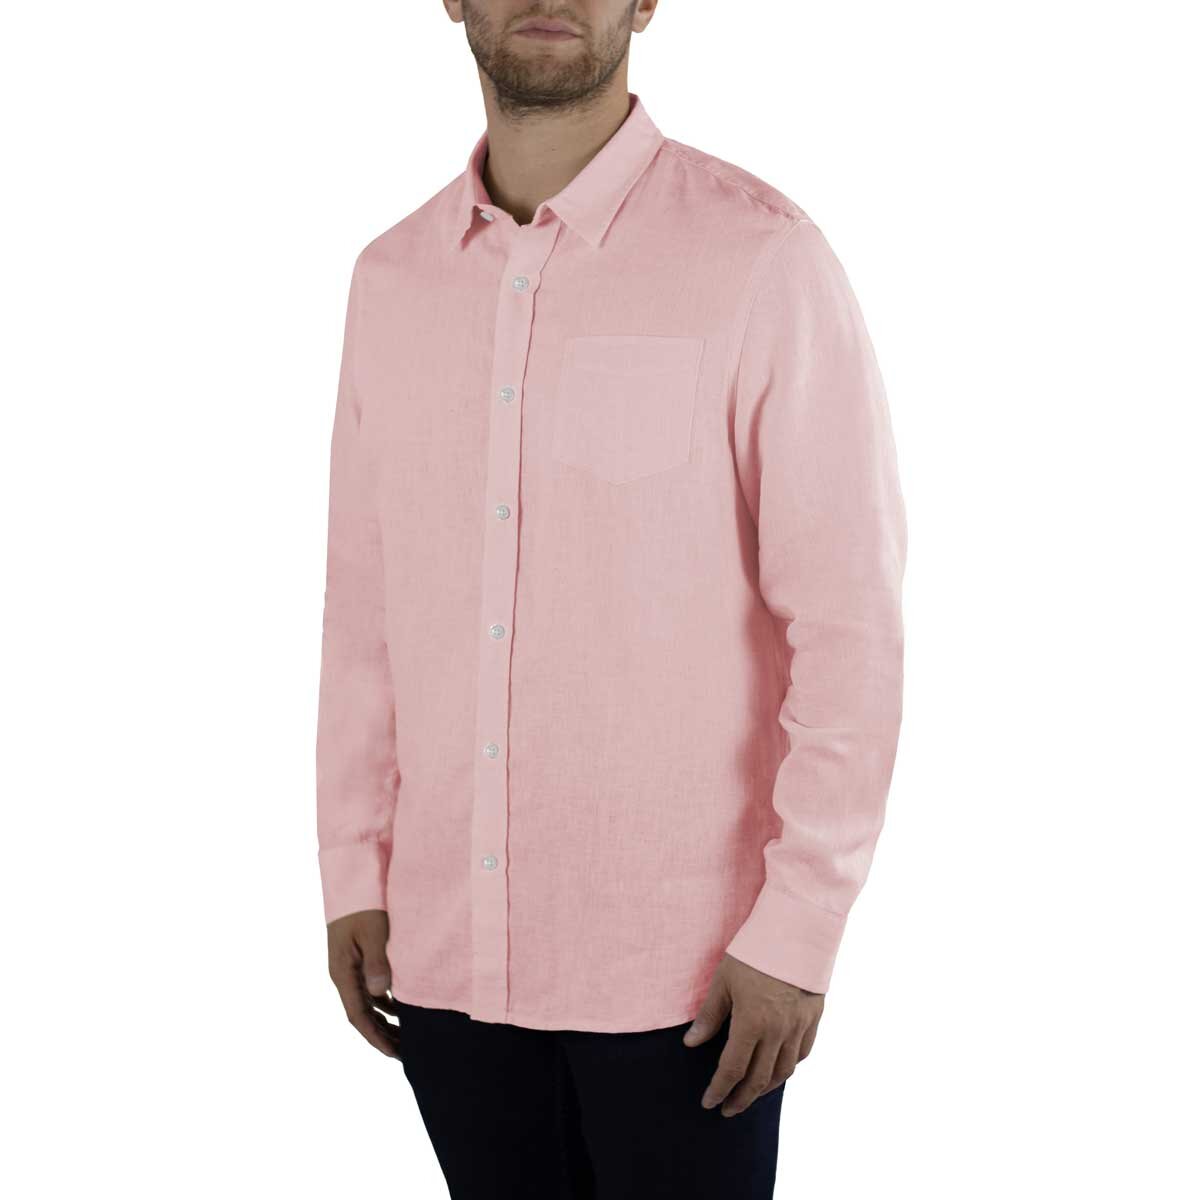 Jachs Men's Linen Long Sleeve Shirt in Pink